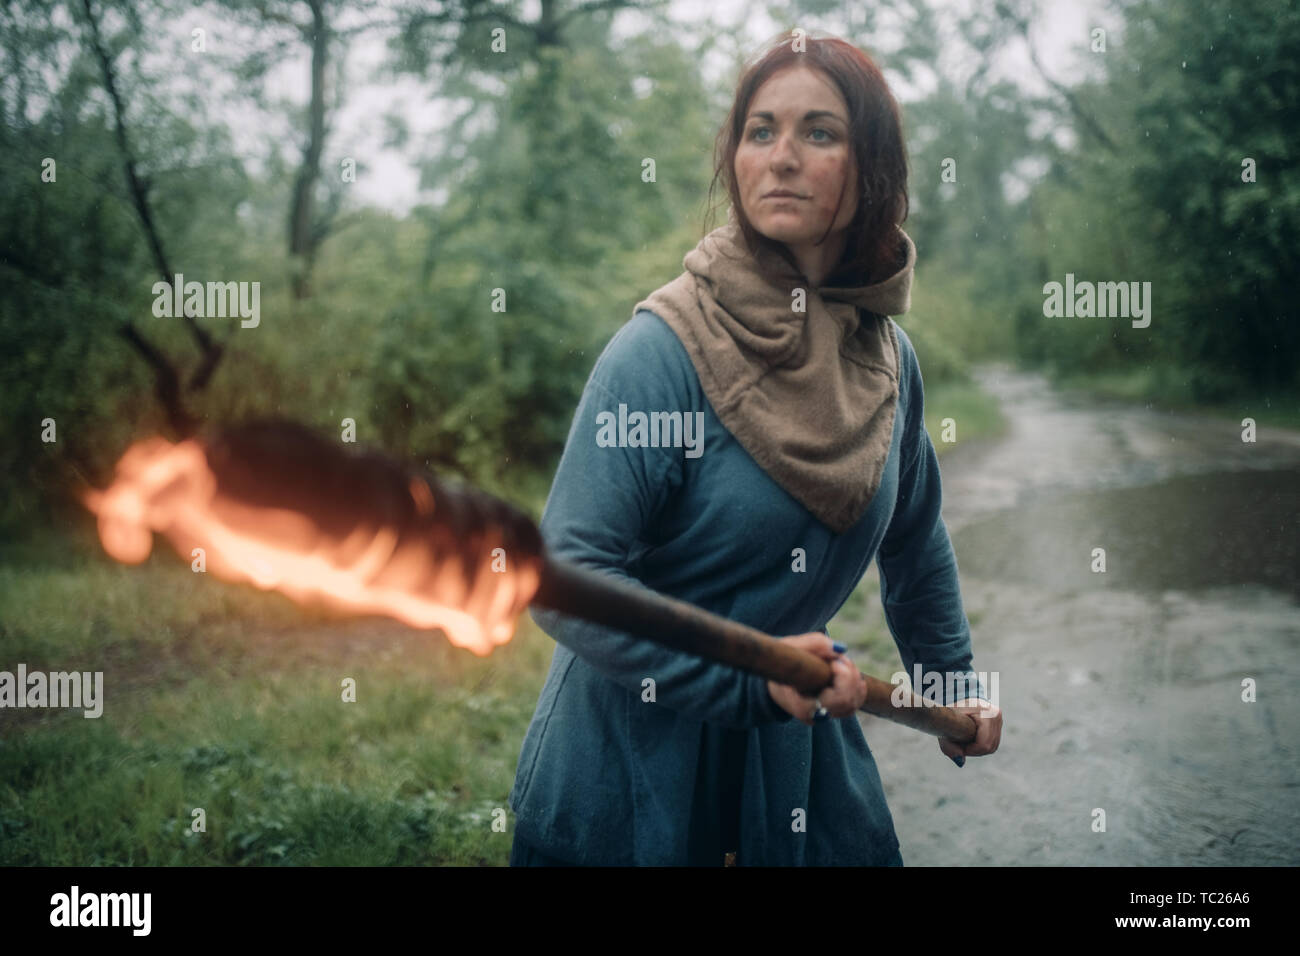 Das Mädchen auf dem Bild einer mittelalterlichen Kriegerin mit einer brennenden Fackel in der Hand ist die Vorbereitung um den Angriff abzuwehren. Stockfoto